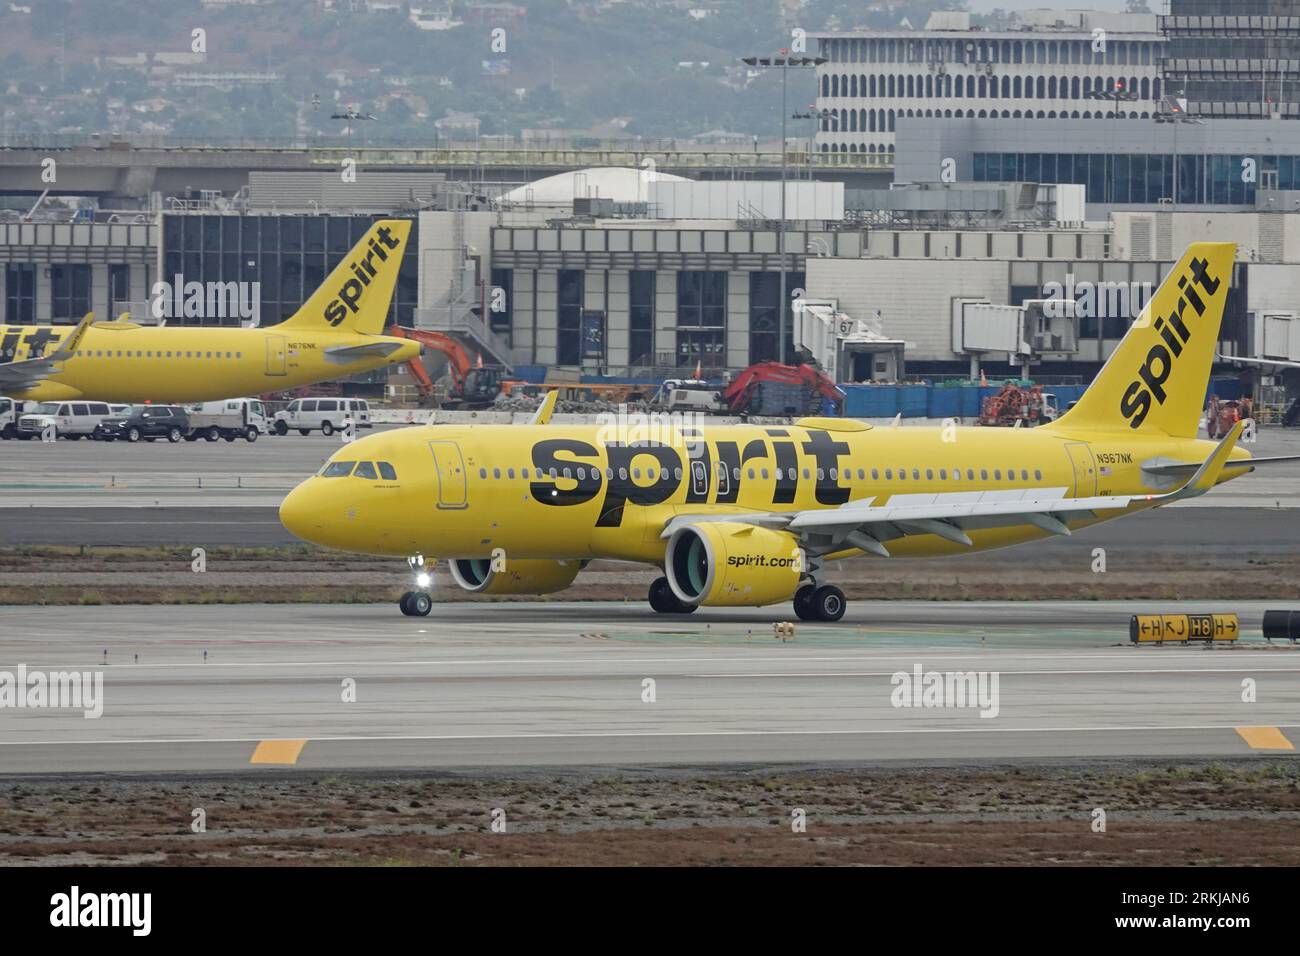 Los Angeles, Californie / États-Unis - 21 août 2023 : un avion de ligne commercial Airbus A320 jaune, exploité par Spirit Airlines, est montré au sol à LAX. Banque D'Images